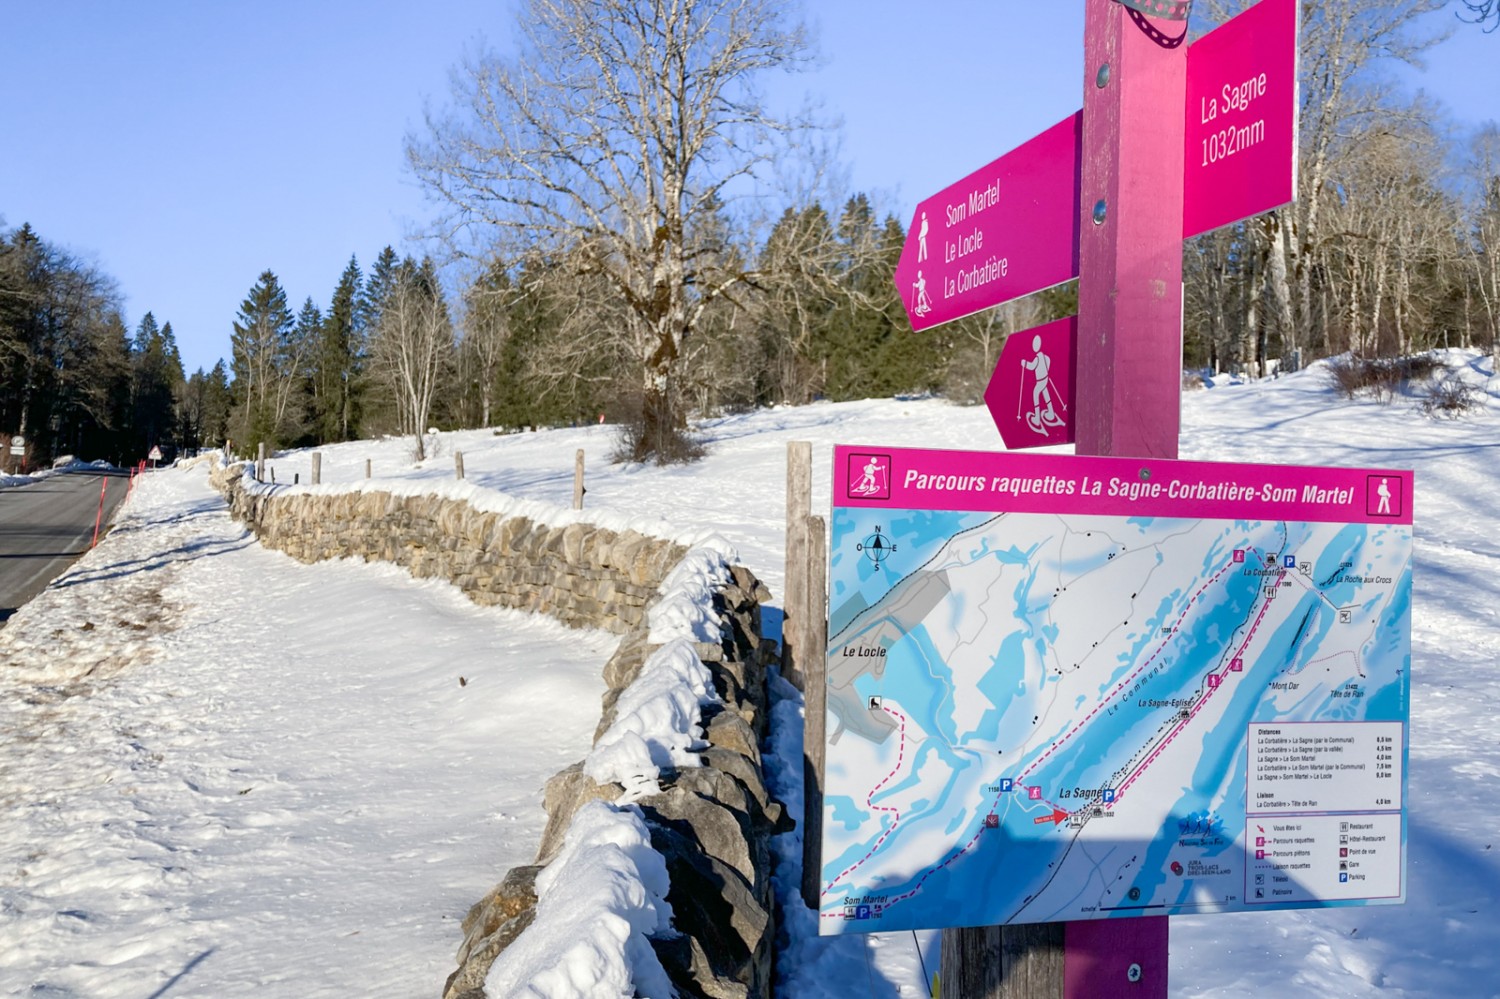 Bei Start, am Dorfrand von La Sagne, können die Schneeschuhe angezogen werden. Bild: Markus Ruff